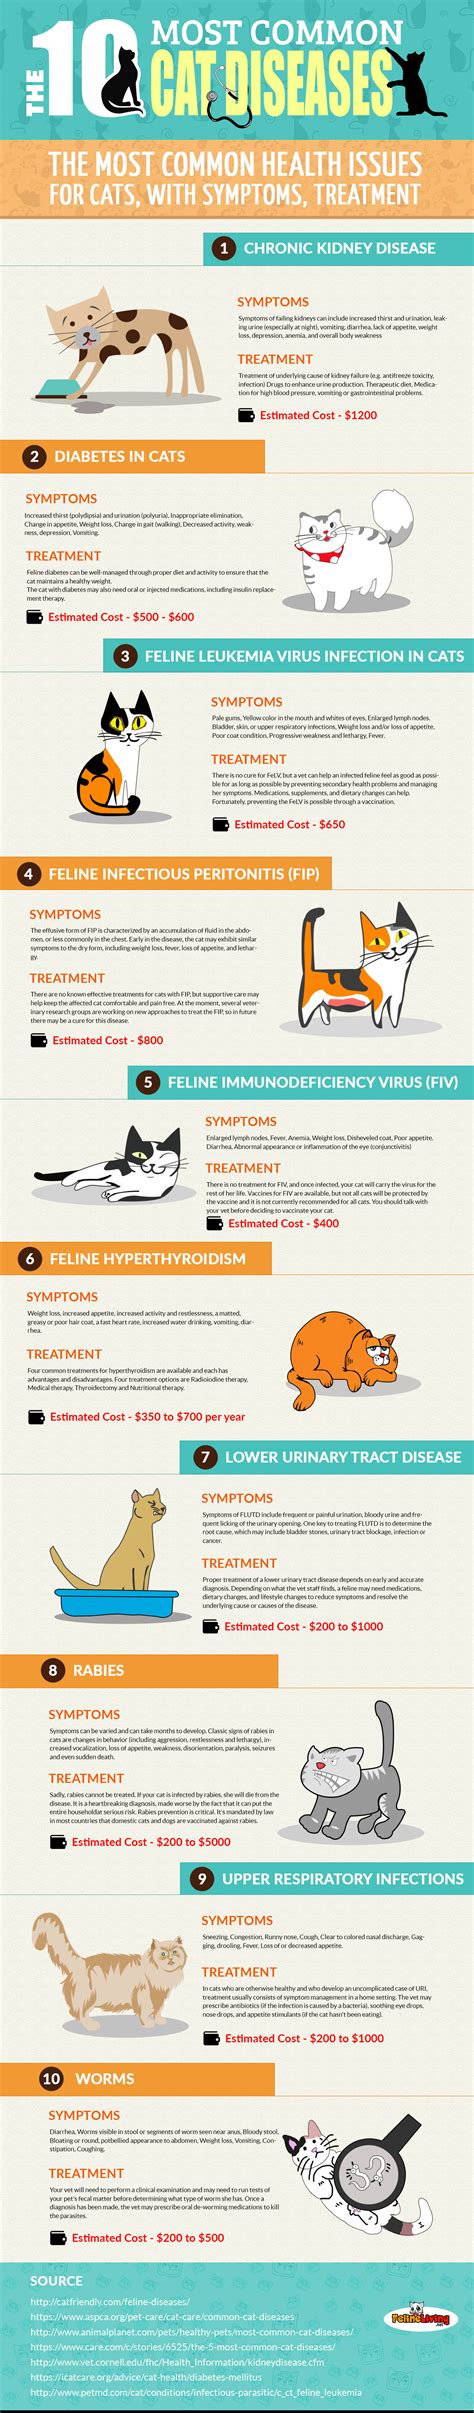 Common Cat Diseases Cat Diabetes And Cat Care